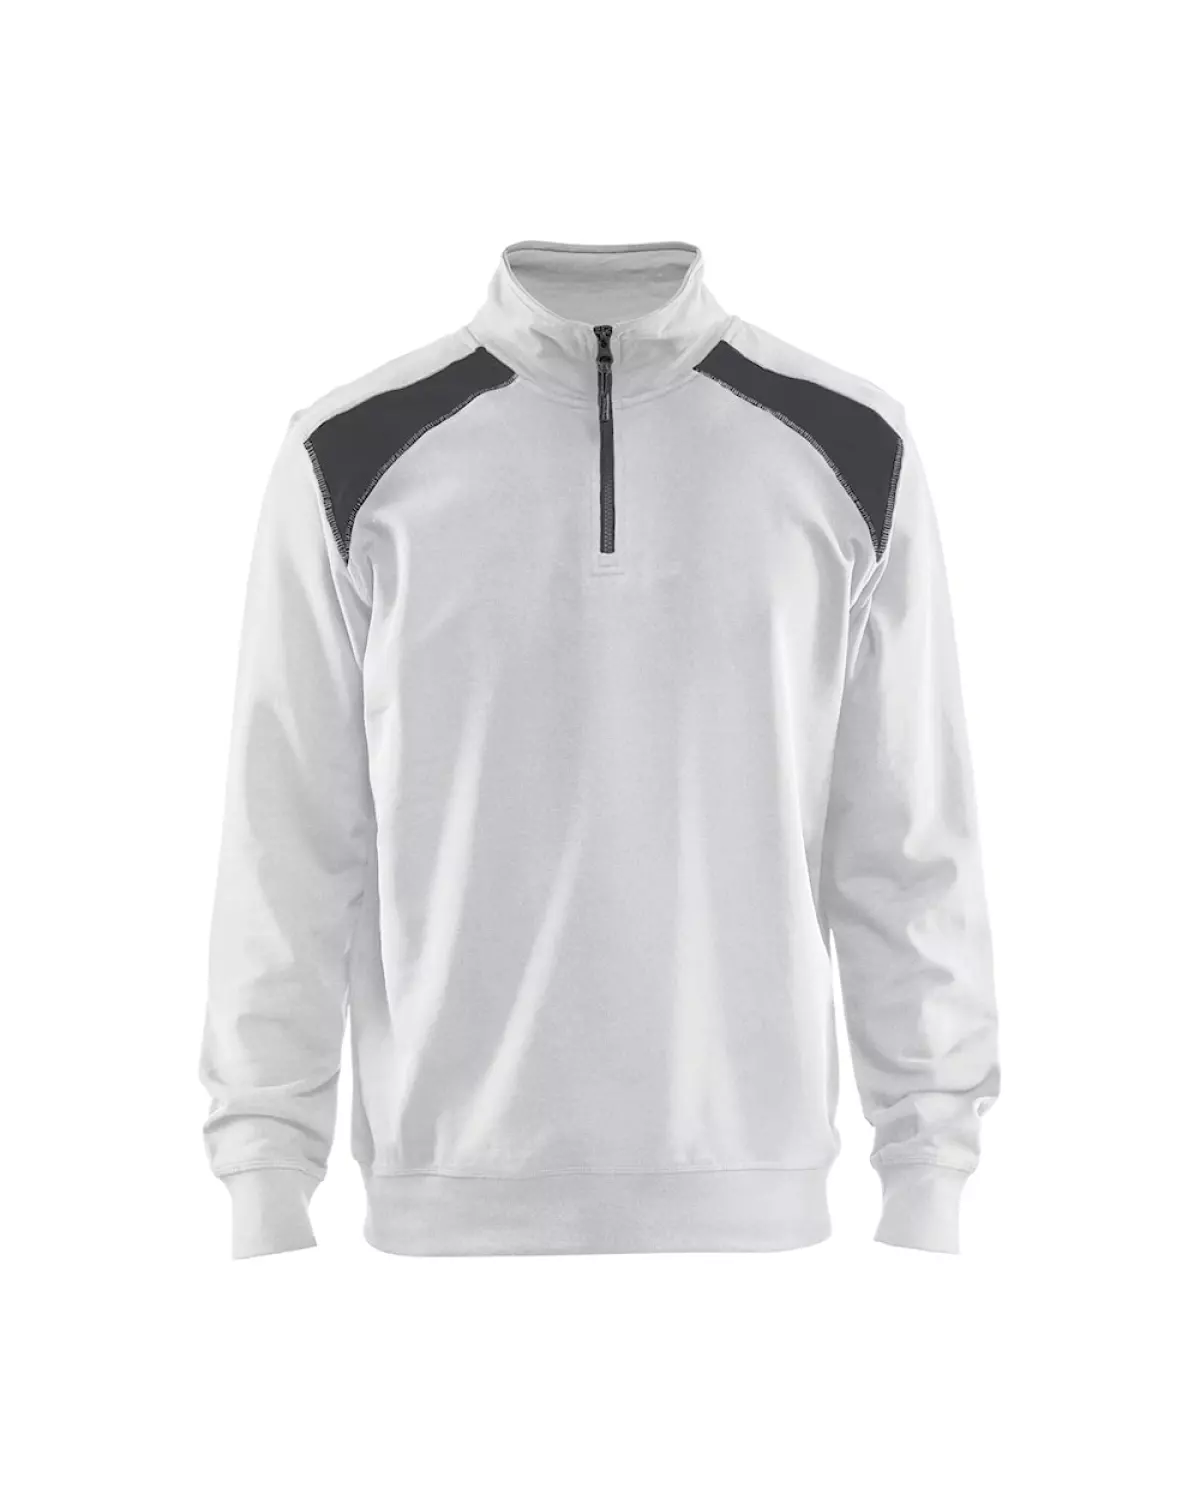 Blåkläder 335311581098S Sweatshirt met halve rits - bi-colour Wit/Donkergrijs - S